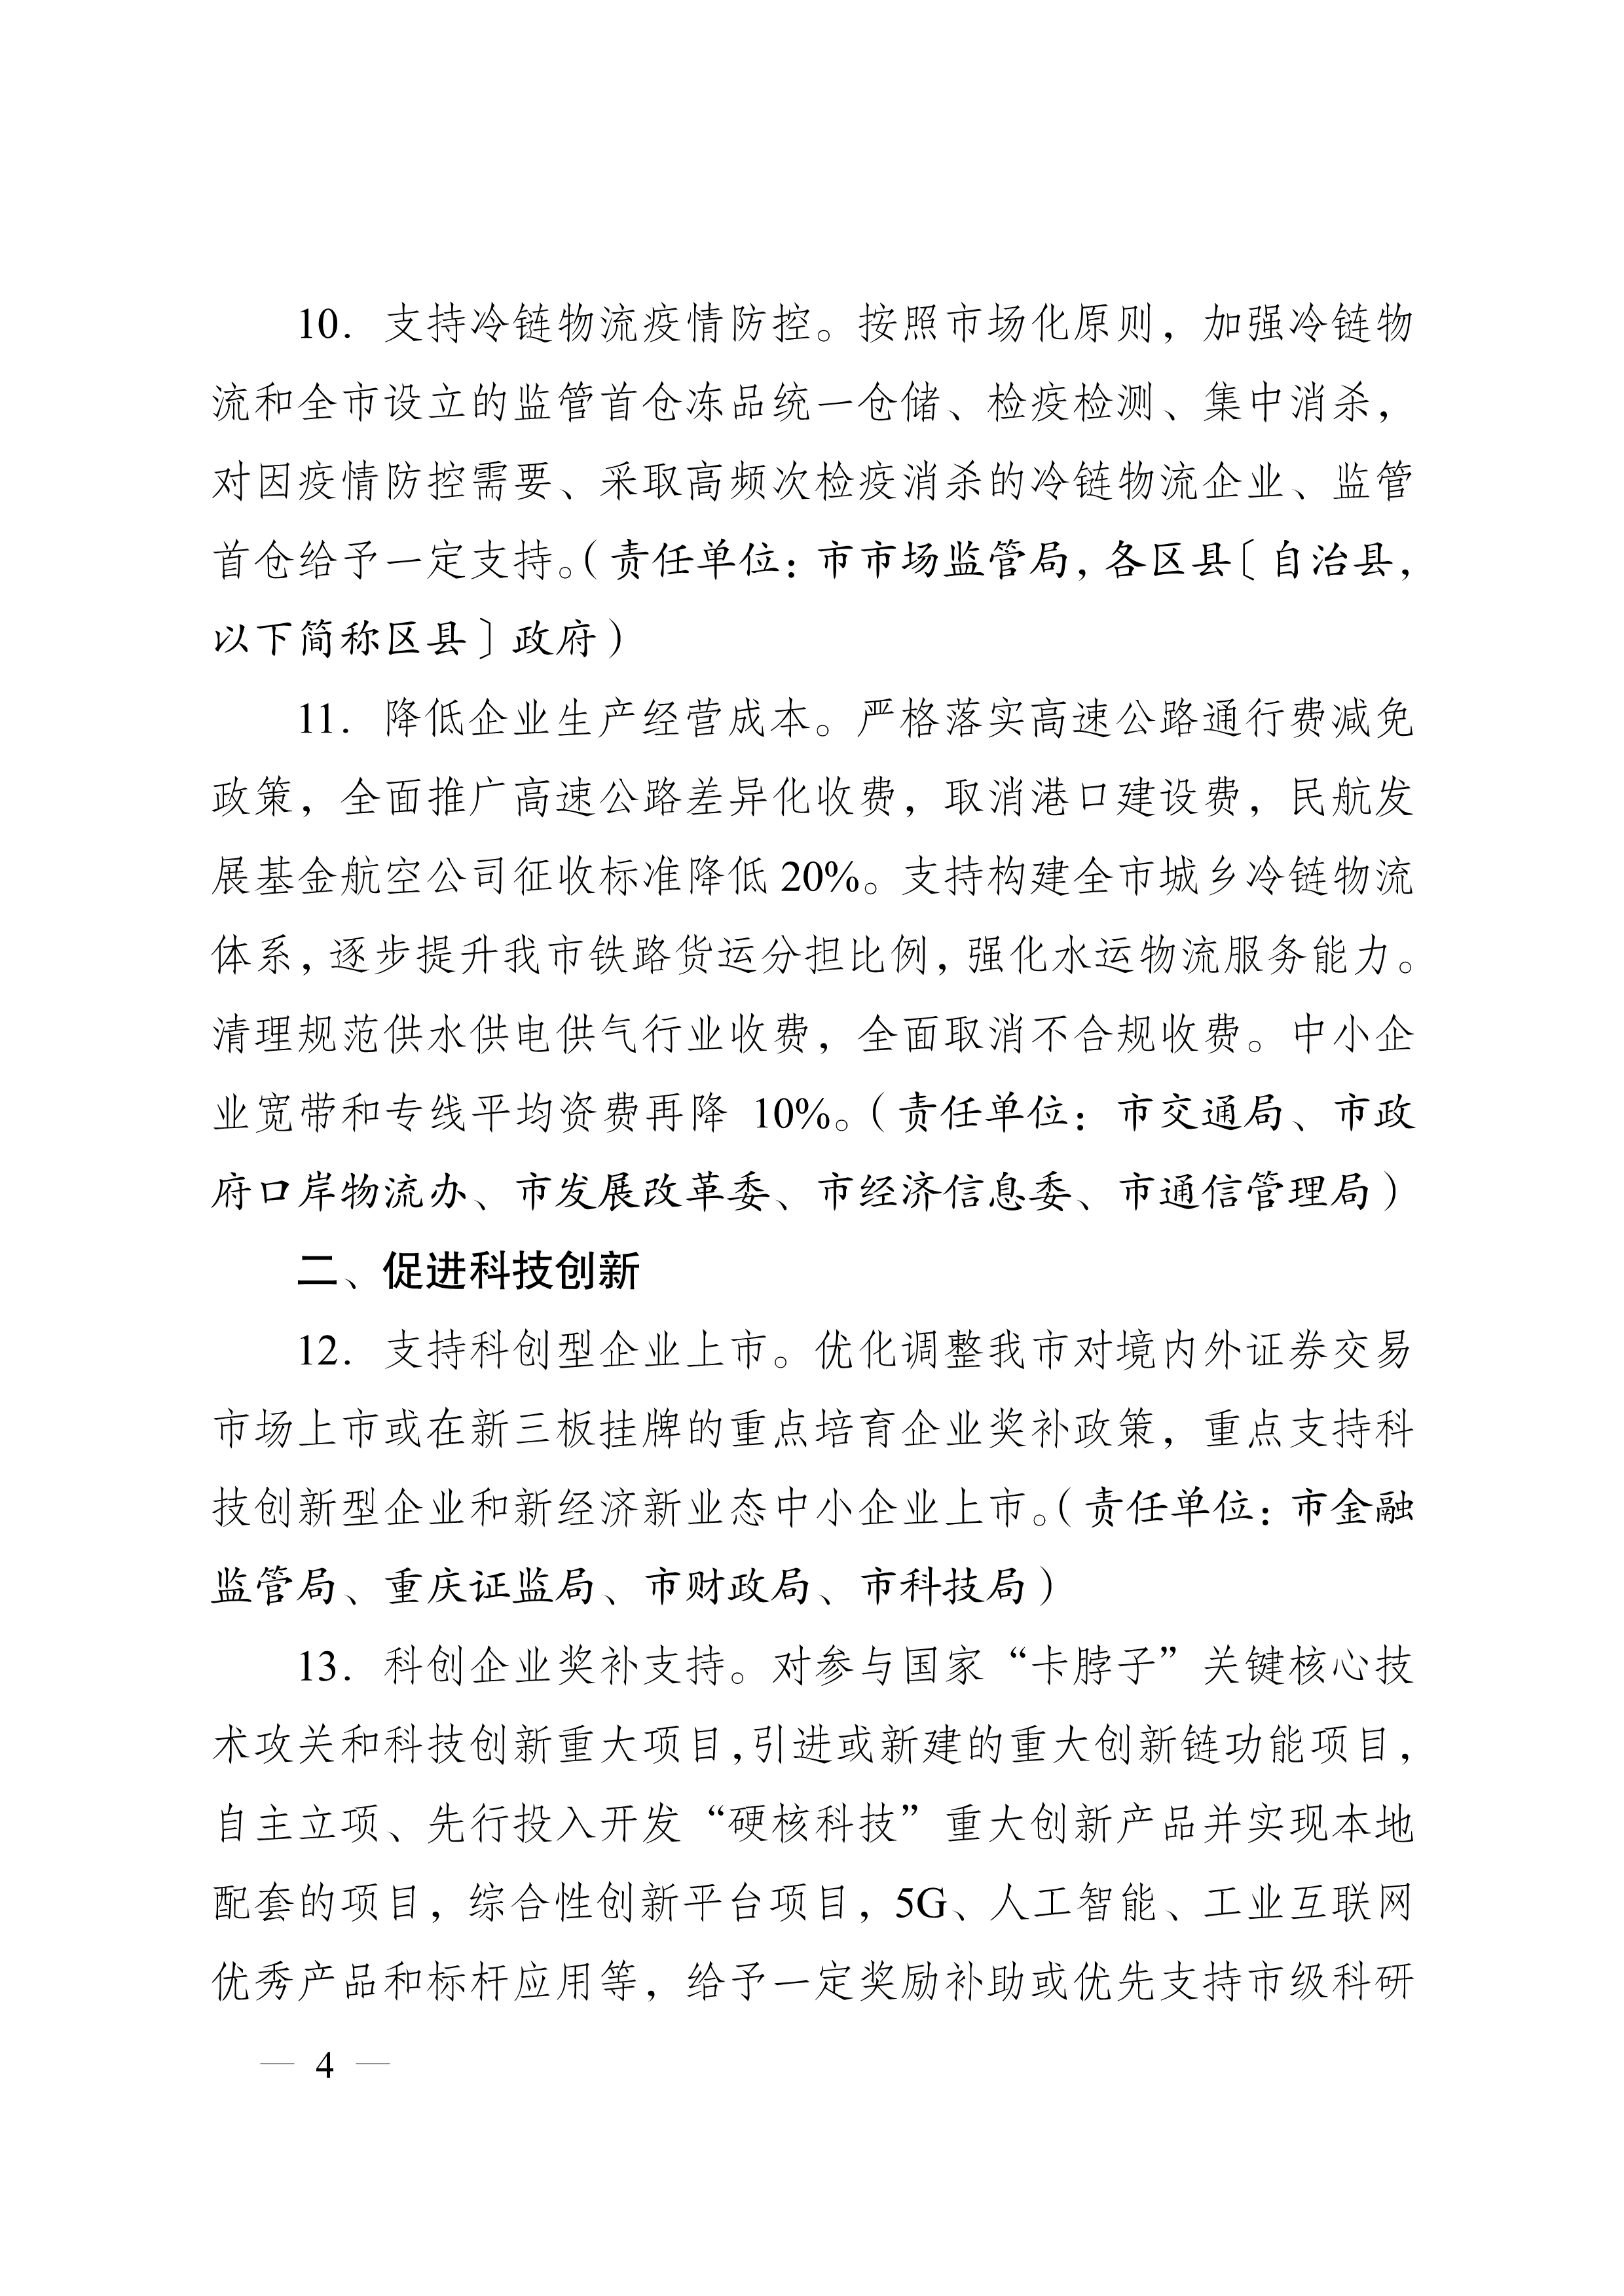 重庆市人民政府办公厅关于促进生产经营稳定发展若干措施的通知(图4)